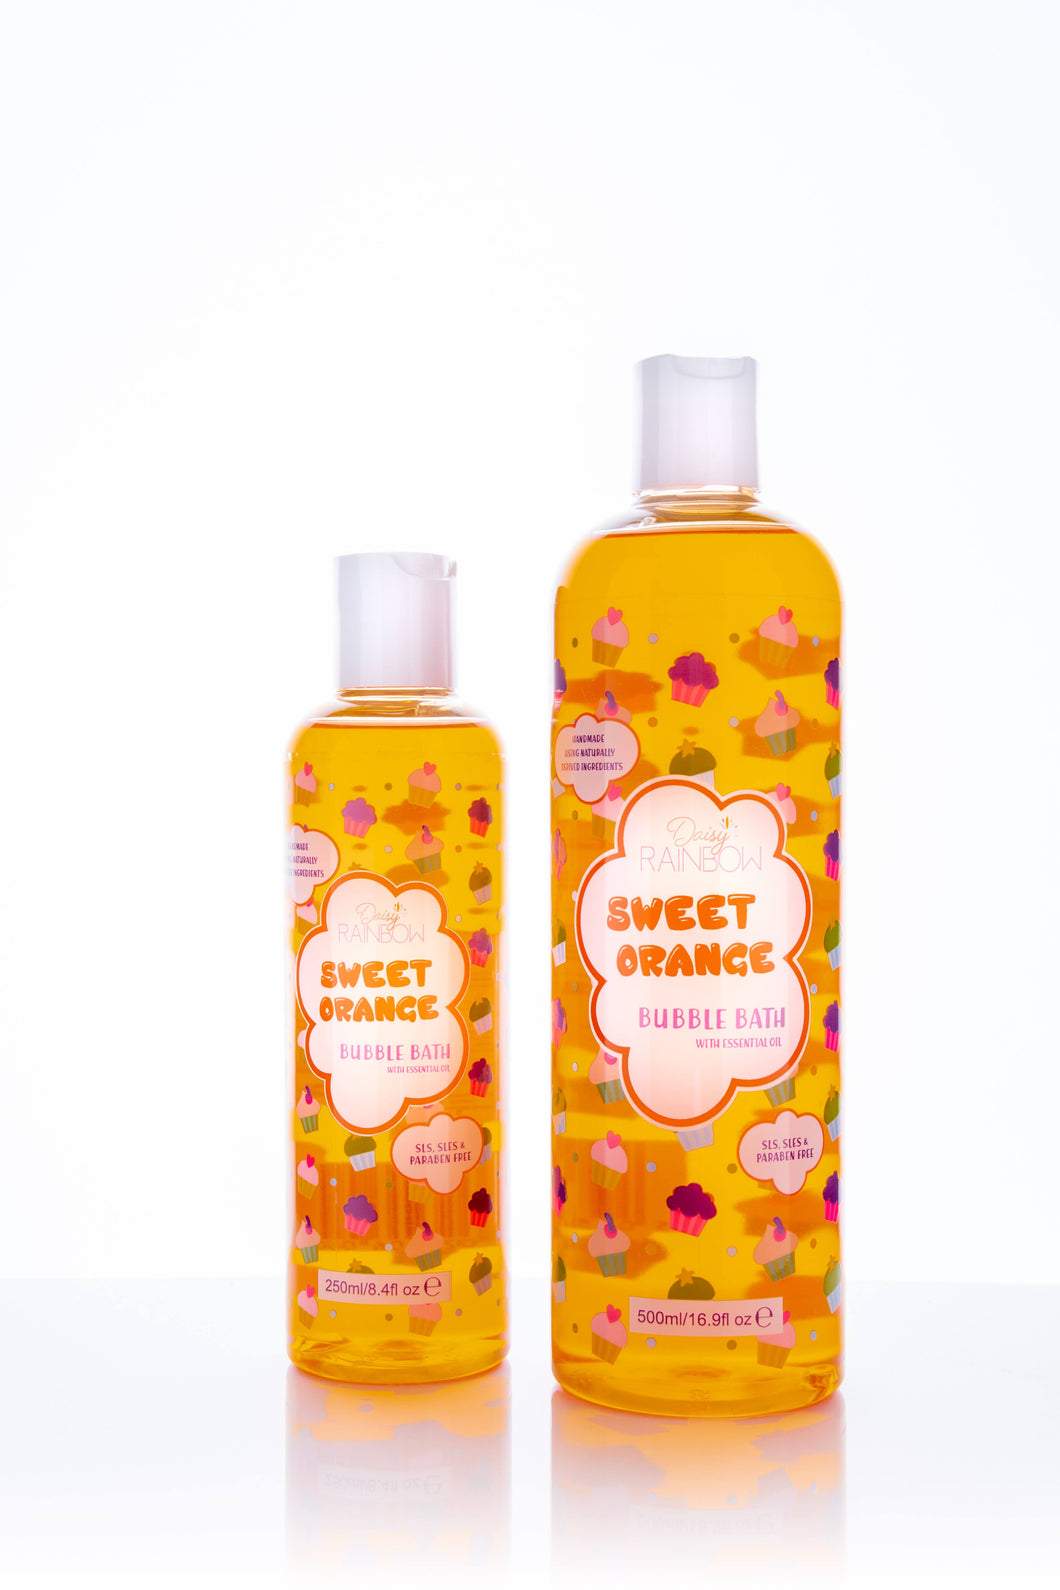 Sweet Orange Bubble Bath Bottles